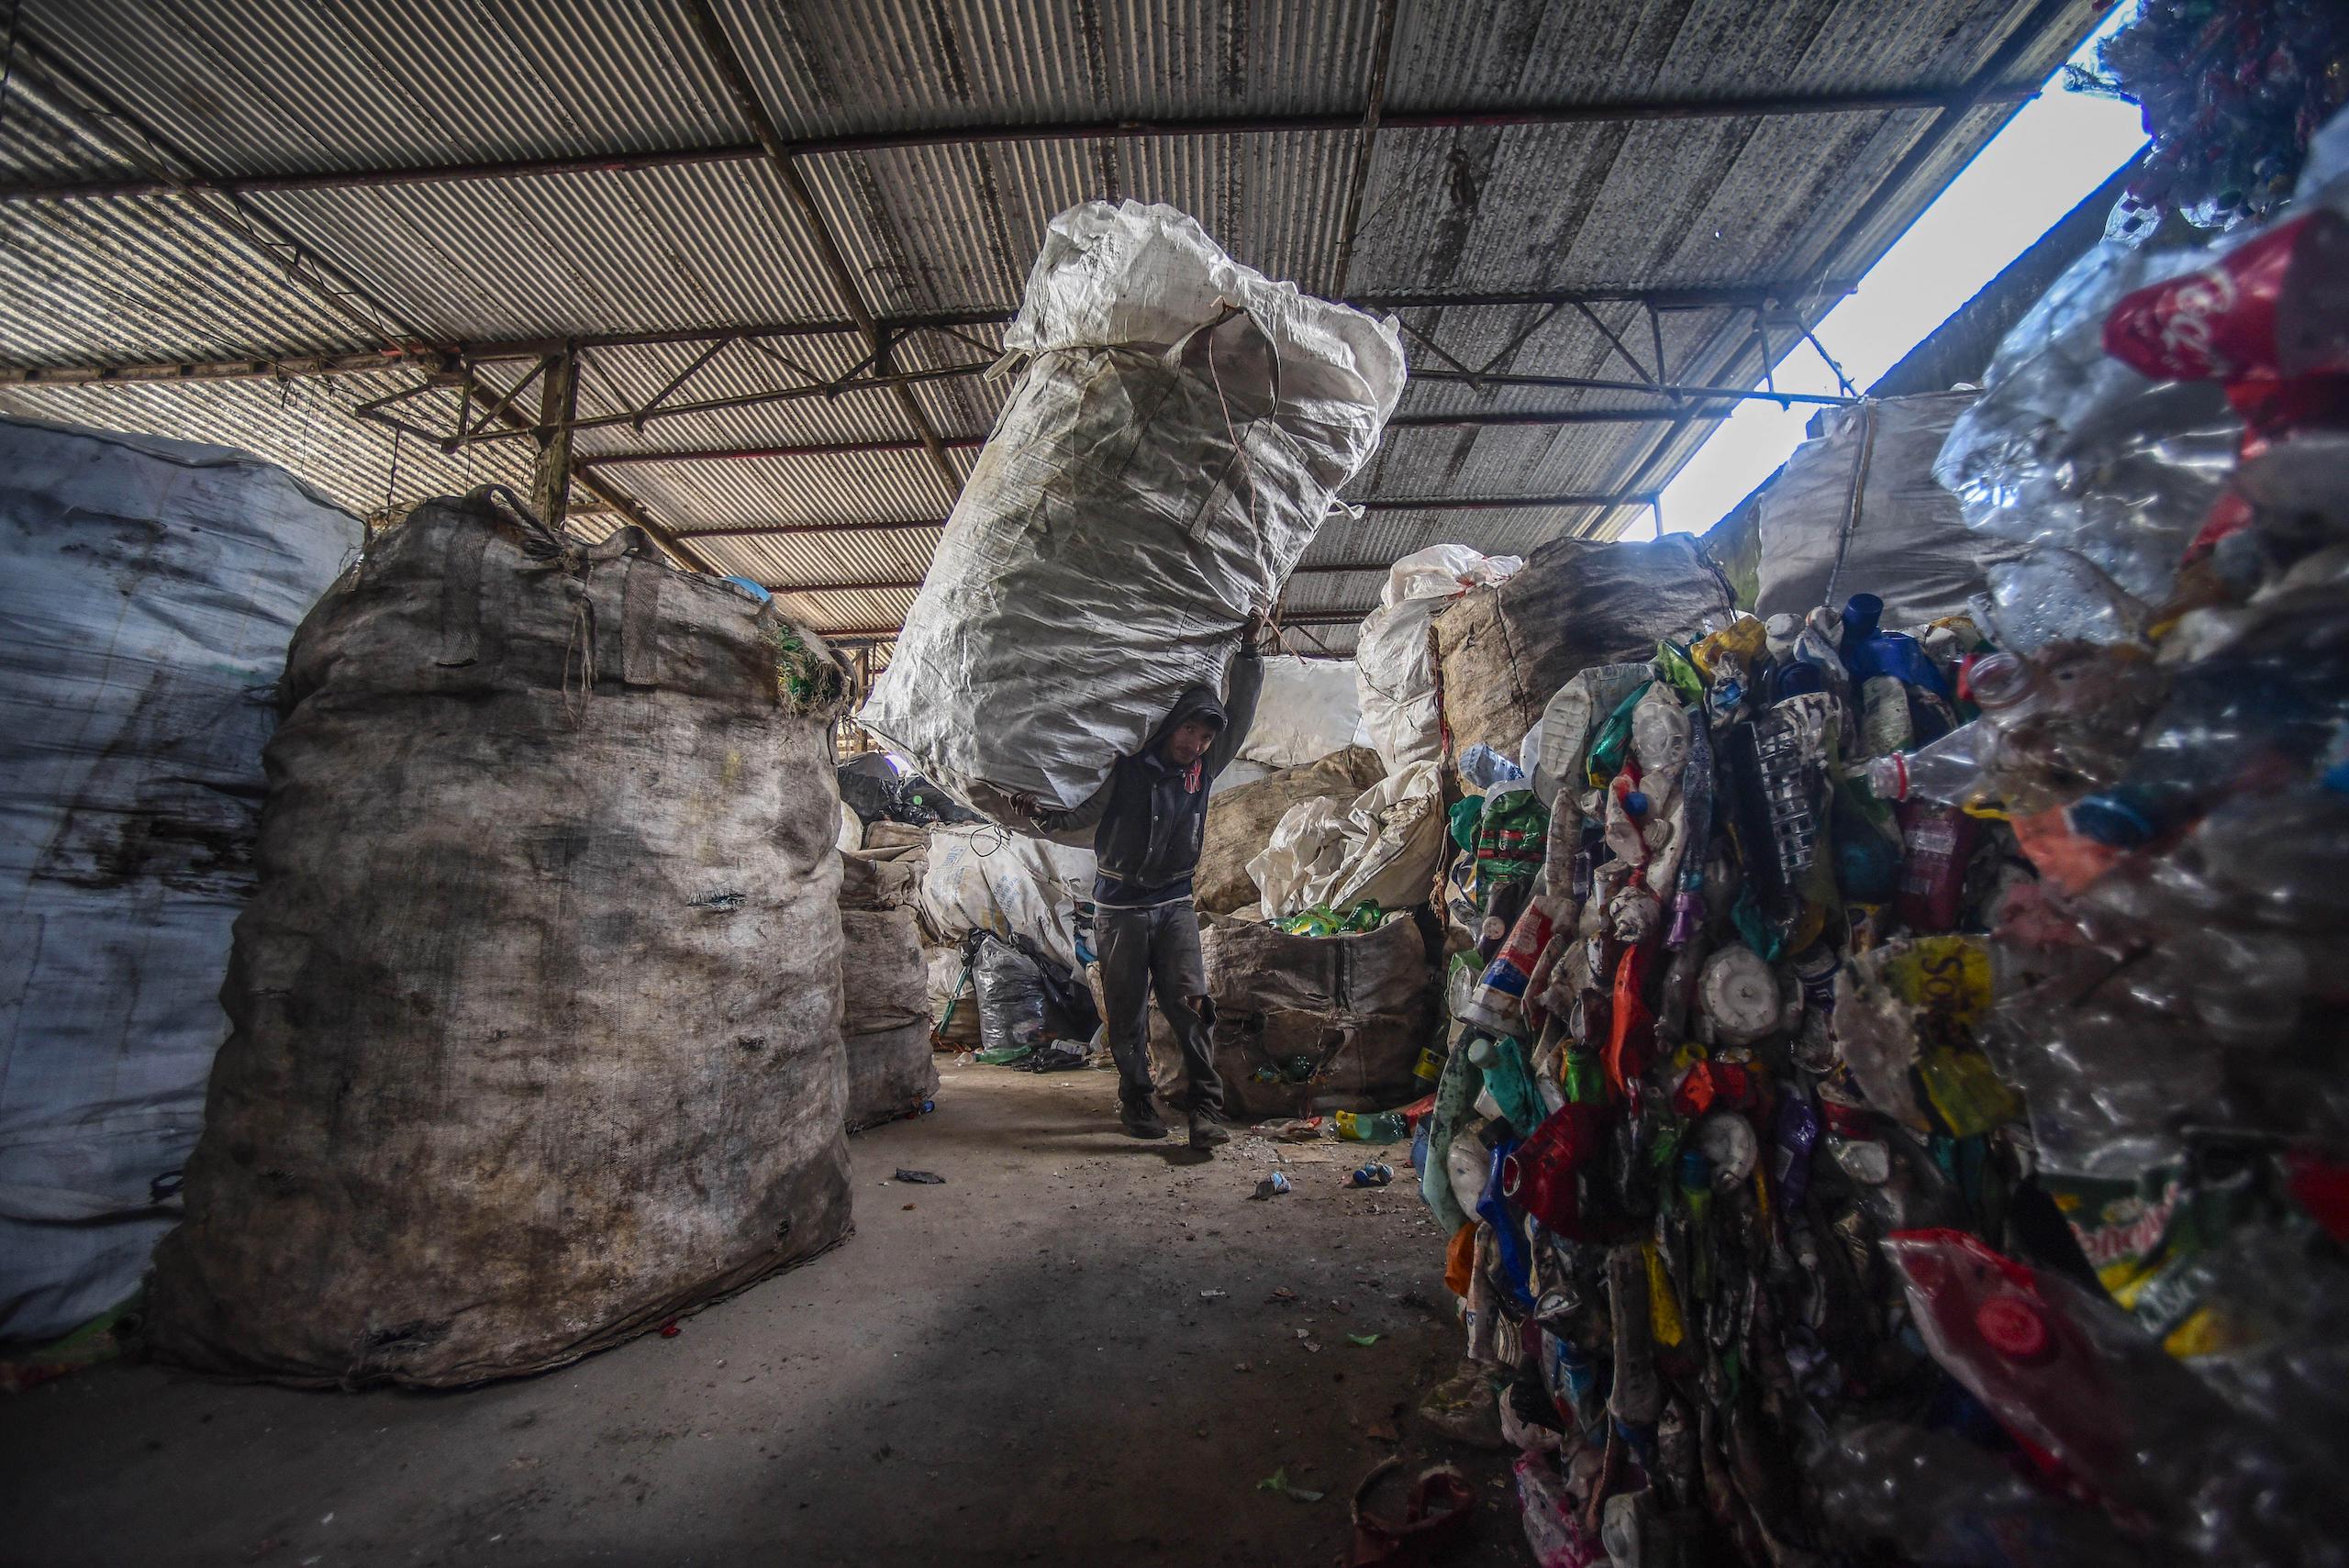 Un reciclador carga una bolsa gigante de residuos al hombro entrando en una planta de reciclaje en México.